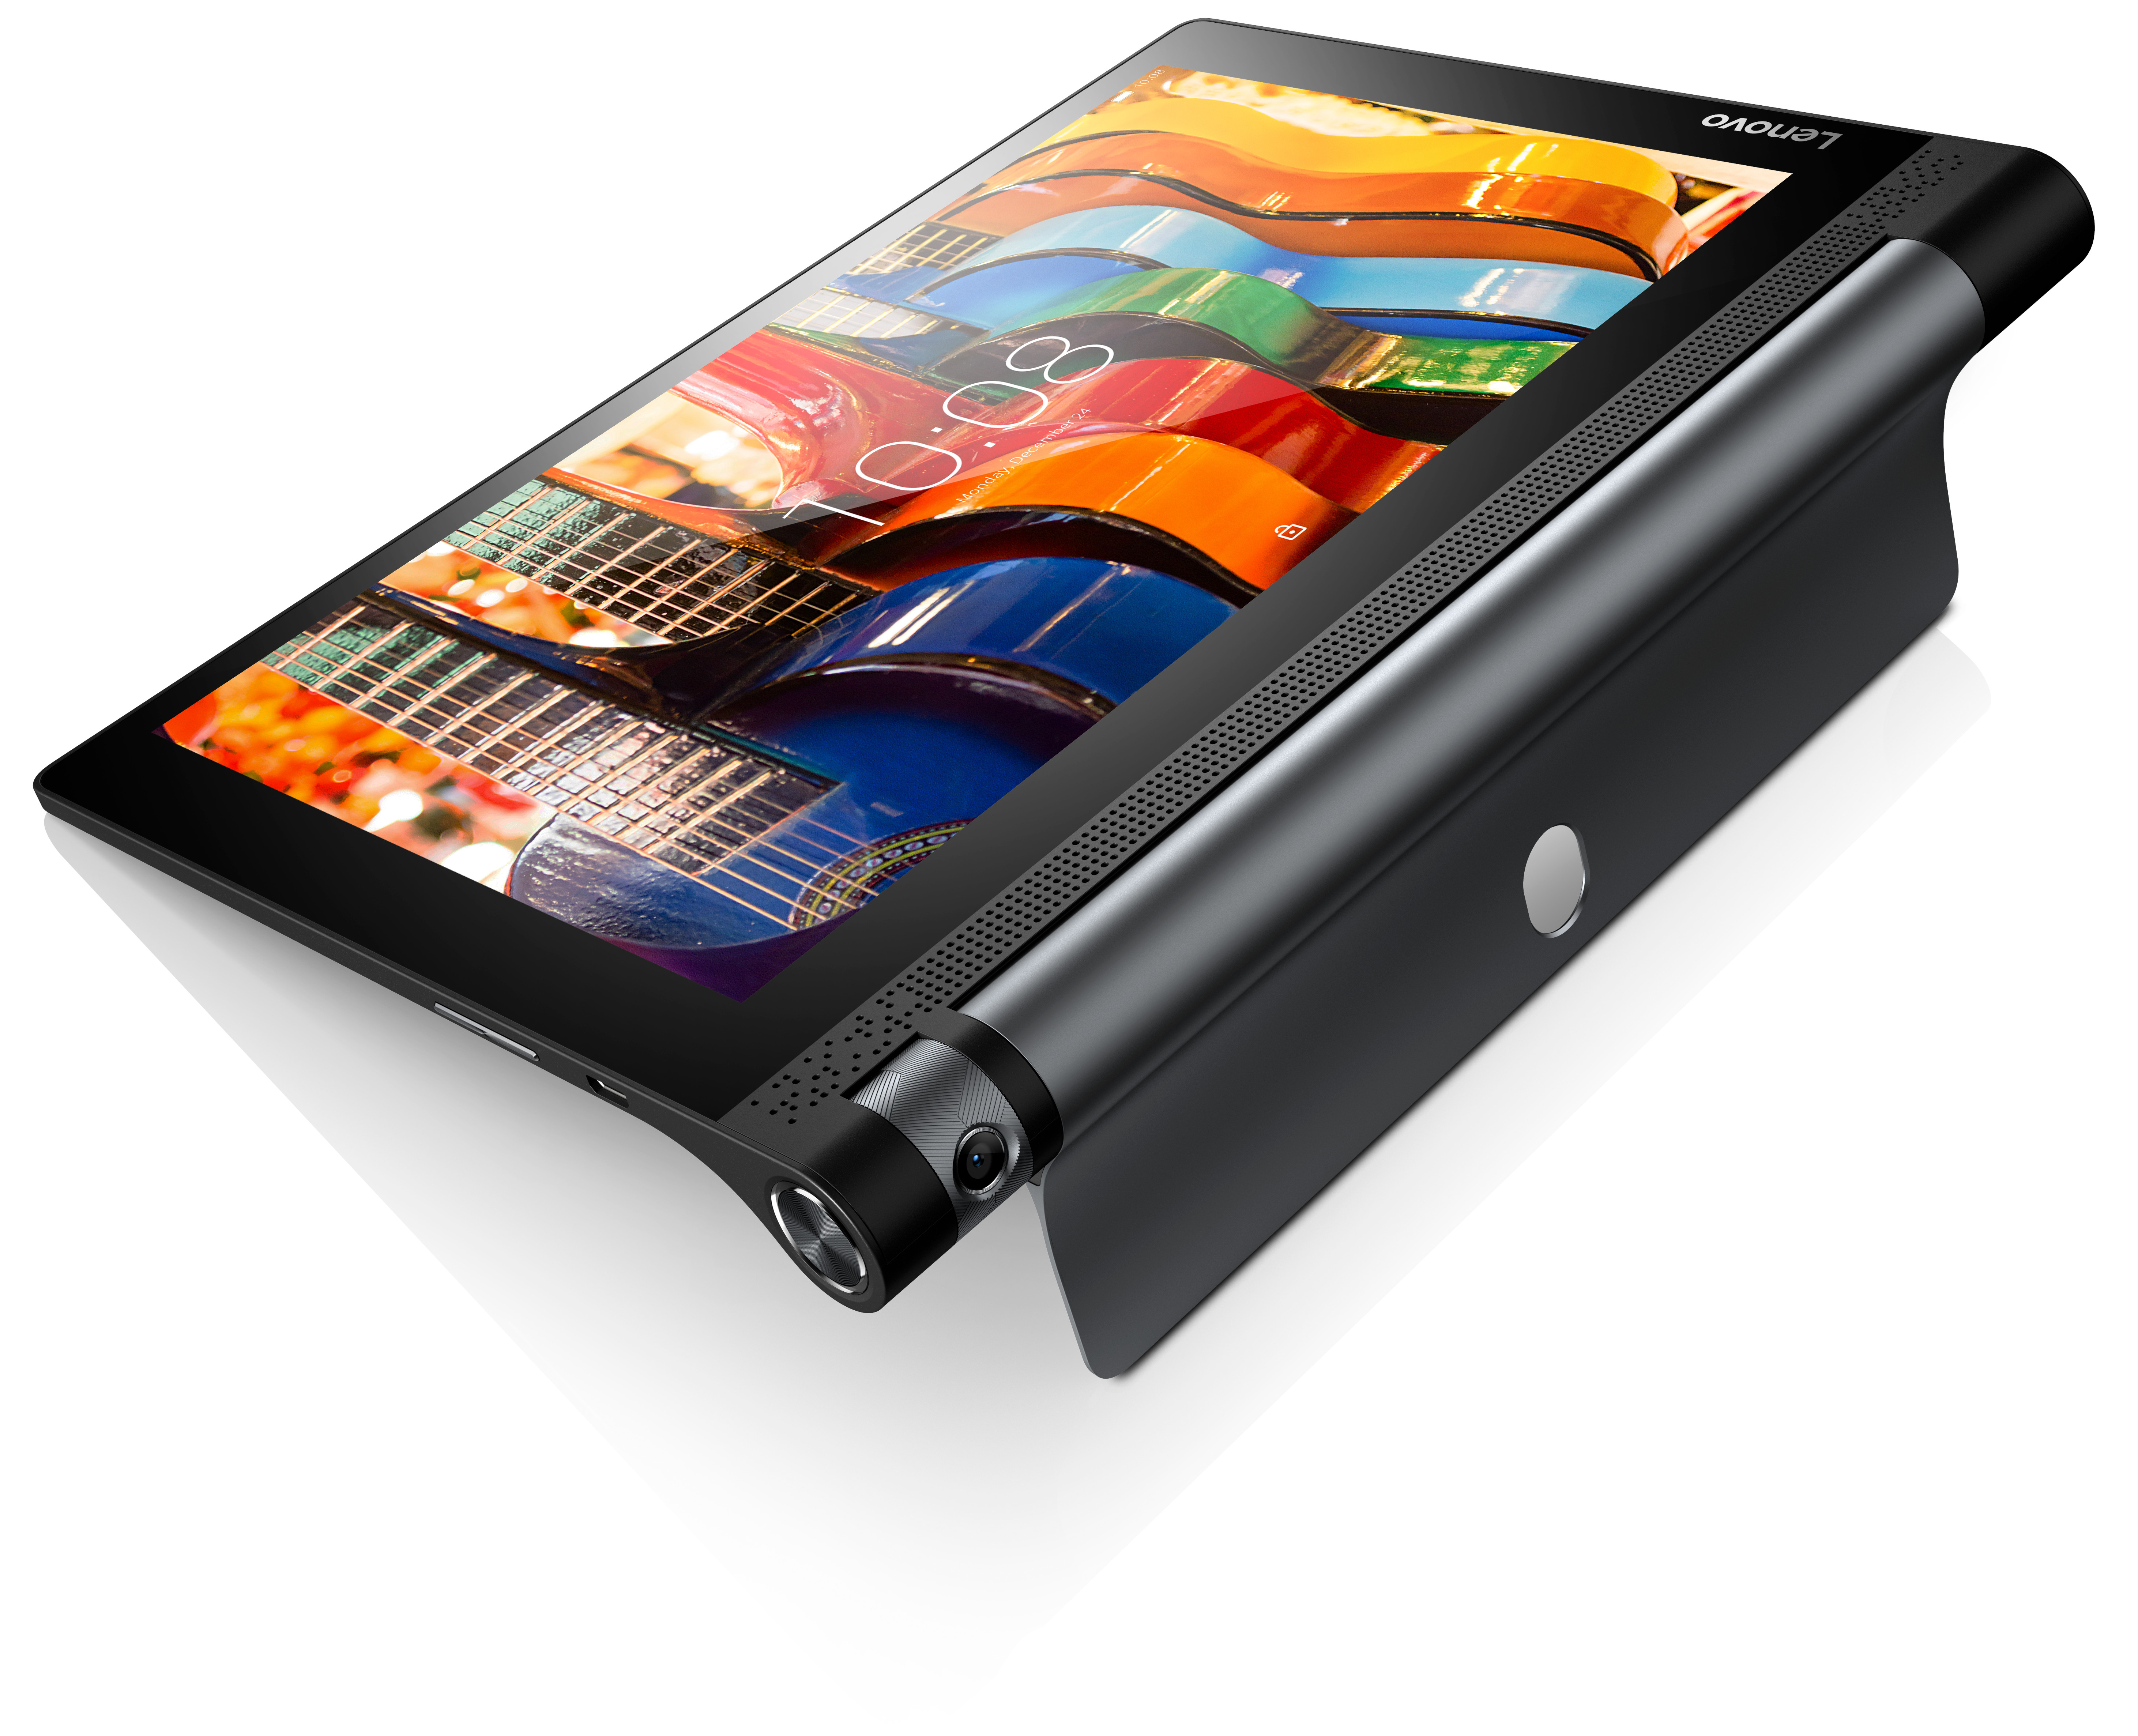 Tablet Lenovo Yoga 3 10 Wi-Fi 2GB / 16GB (ZA0H0057CZ) Black